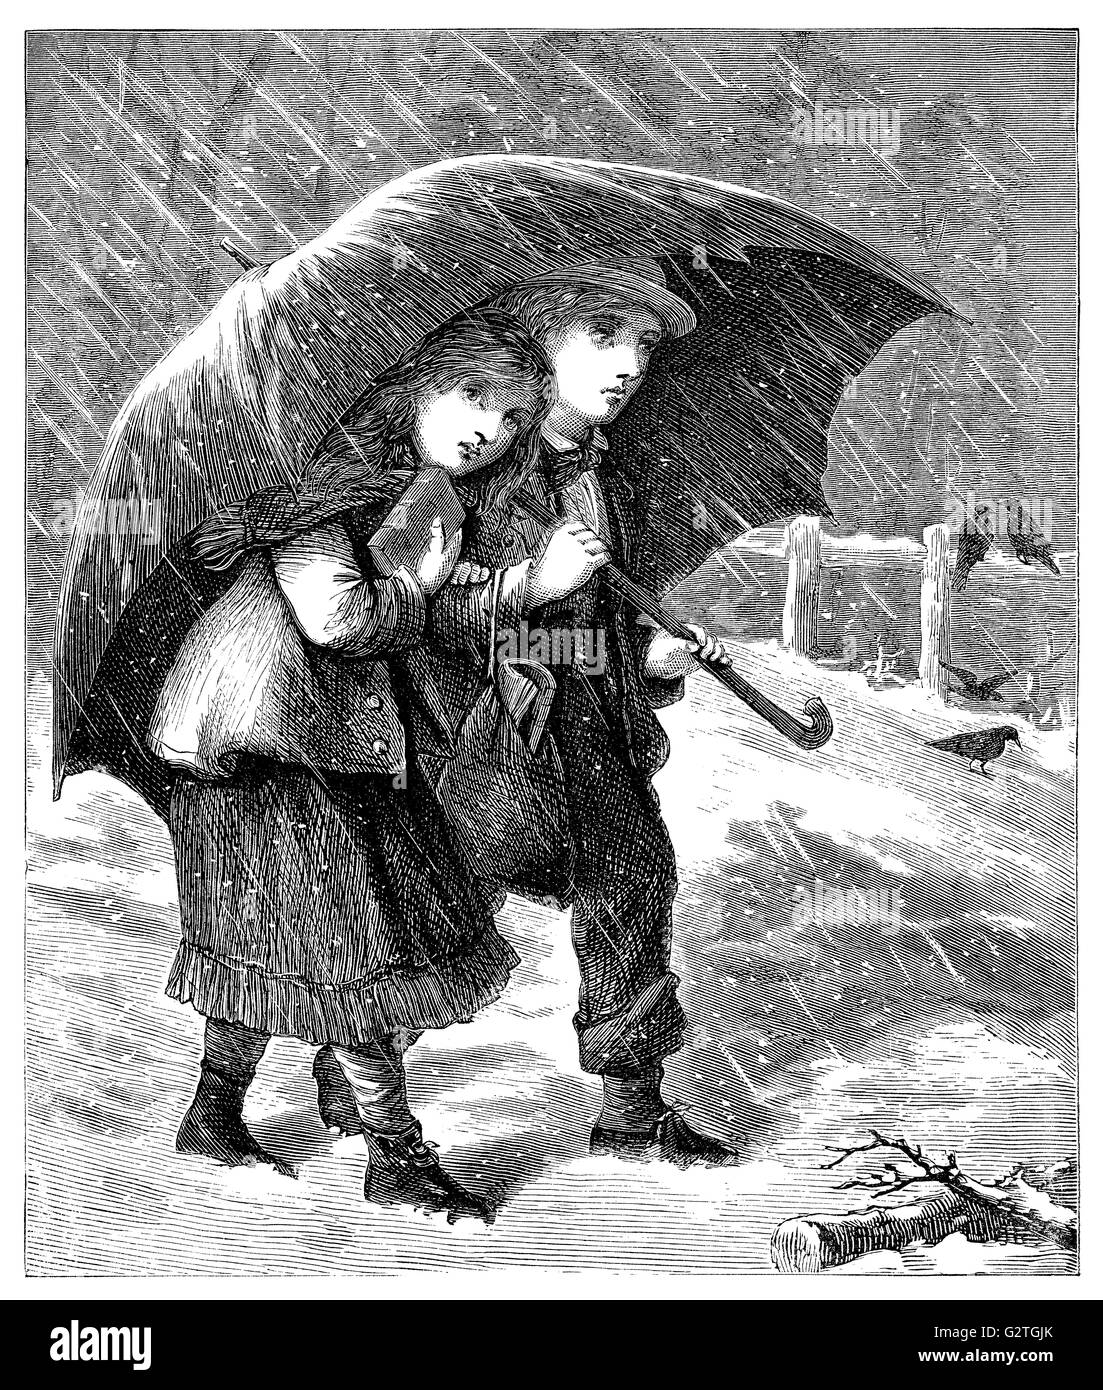 Schwarz / weiß-Gravur eines viktorianischen jungen und Mädchen im Schnee unter einem Regenschirm. Stockfoto